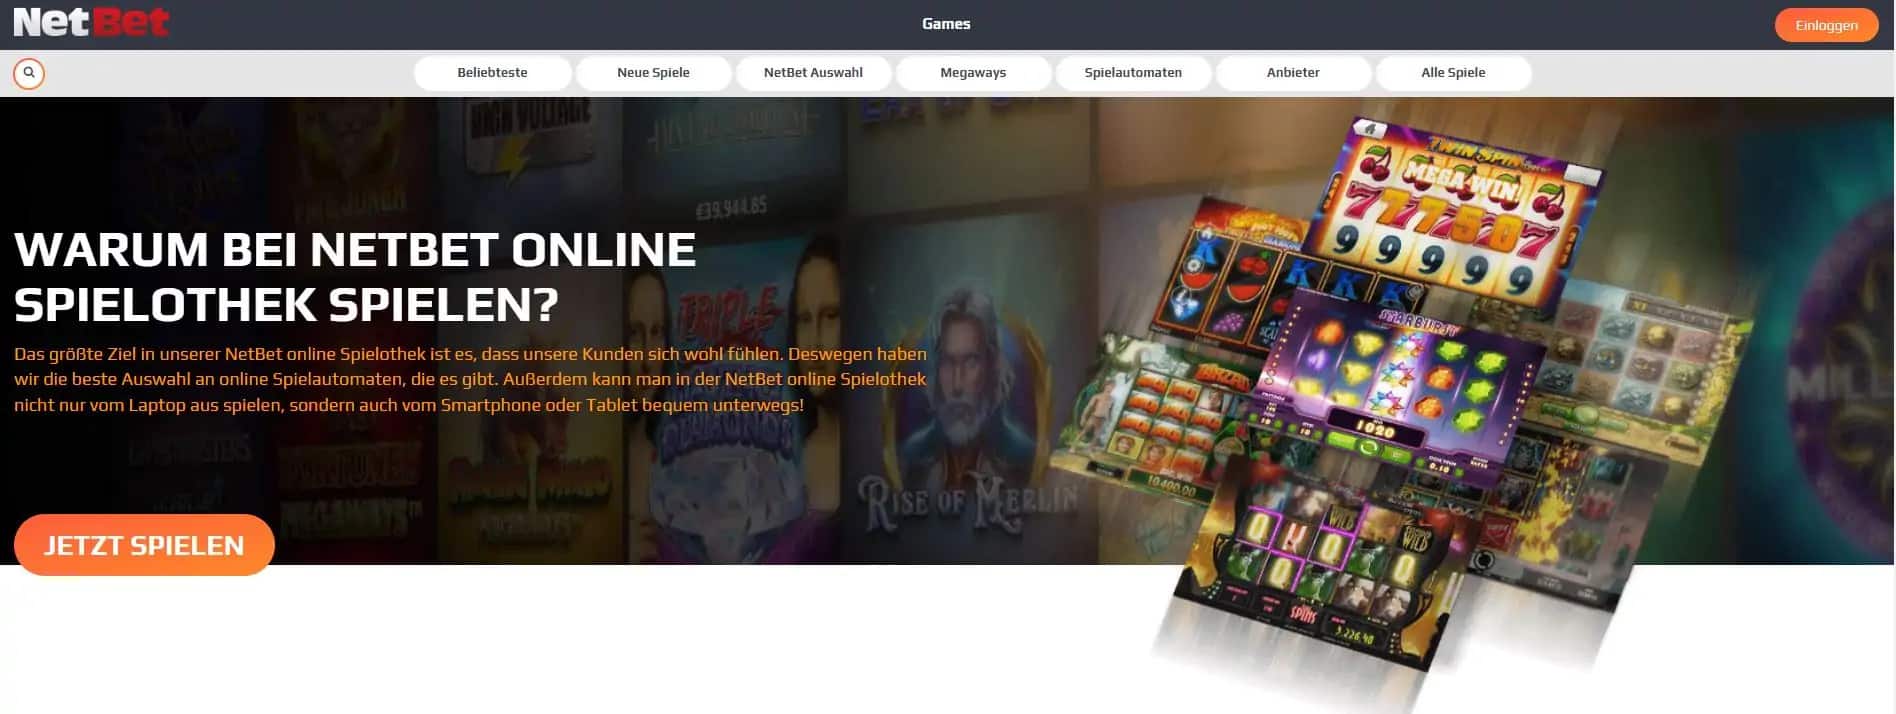  NetBet Online Casino - Startseite im SEO Test